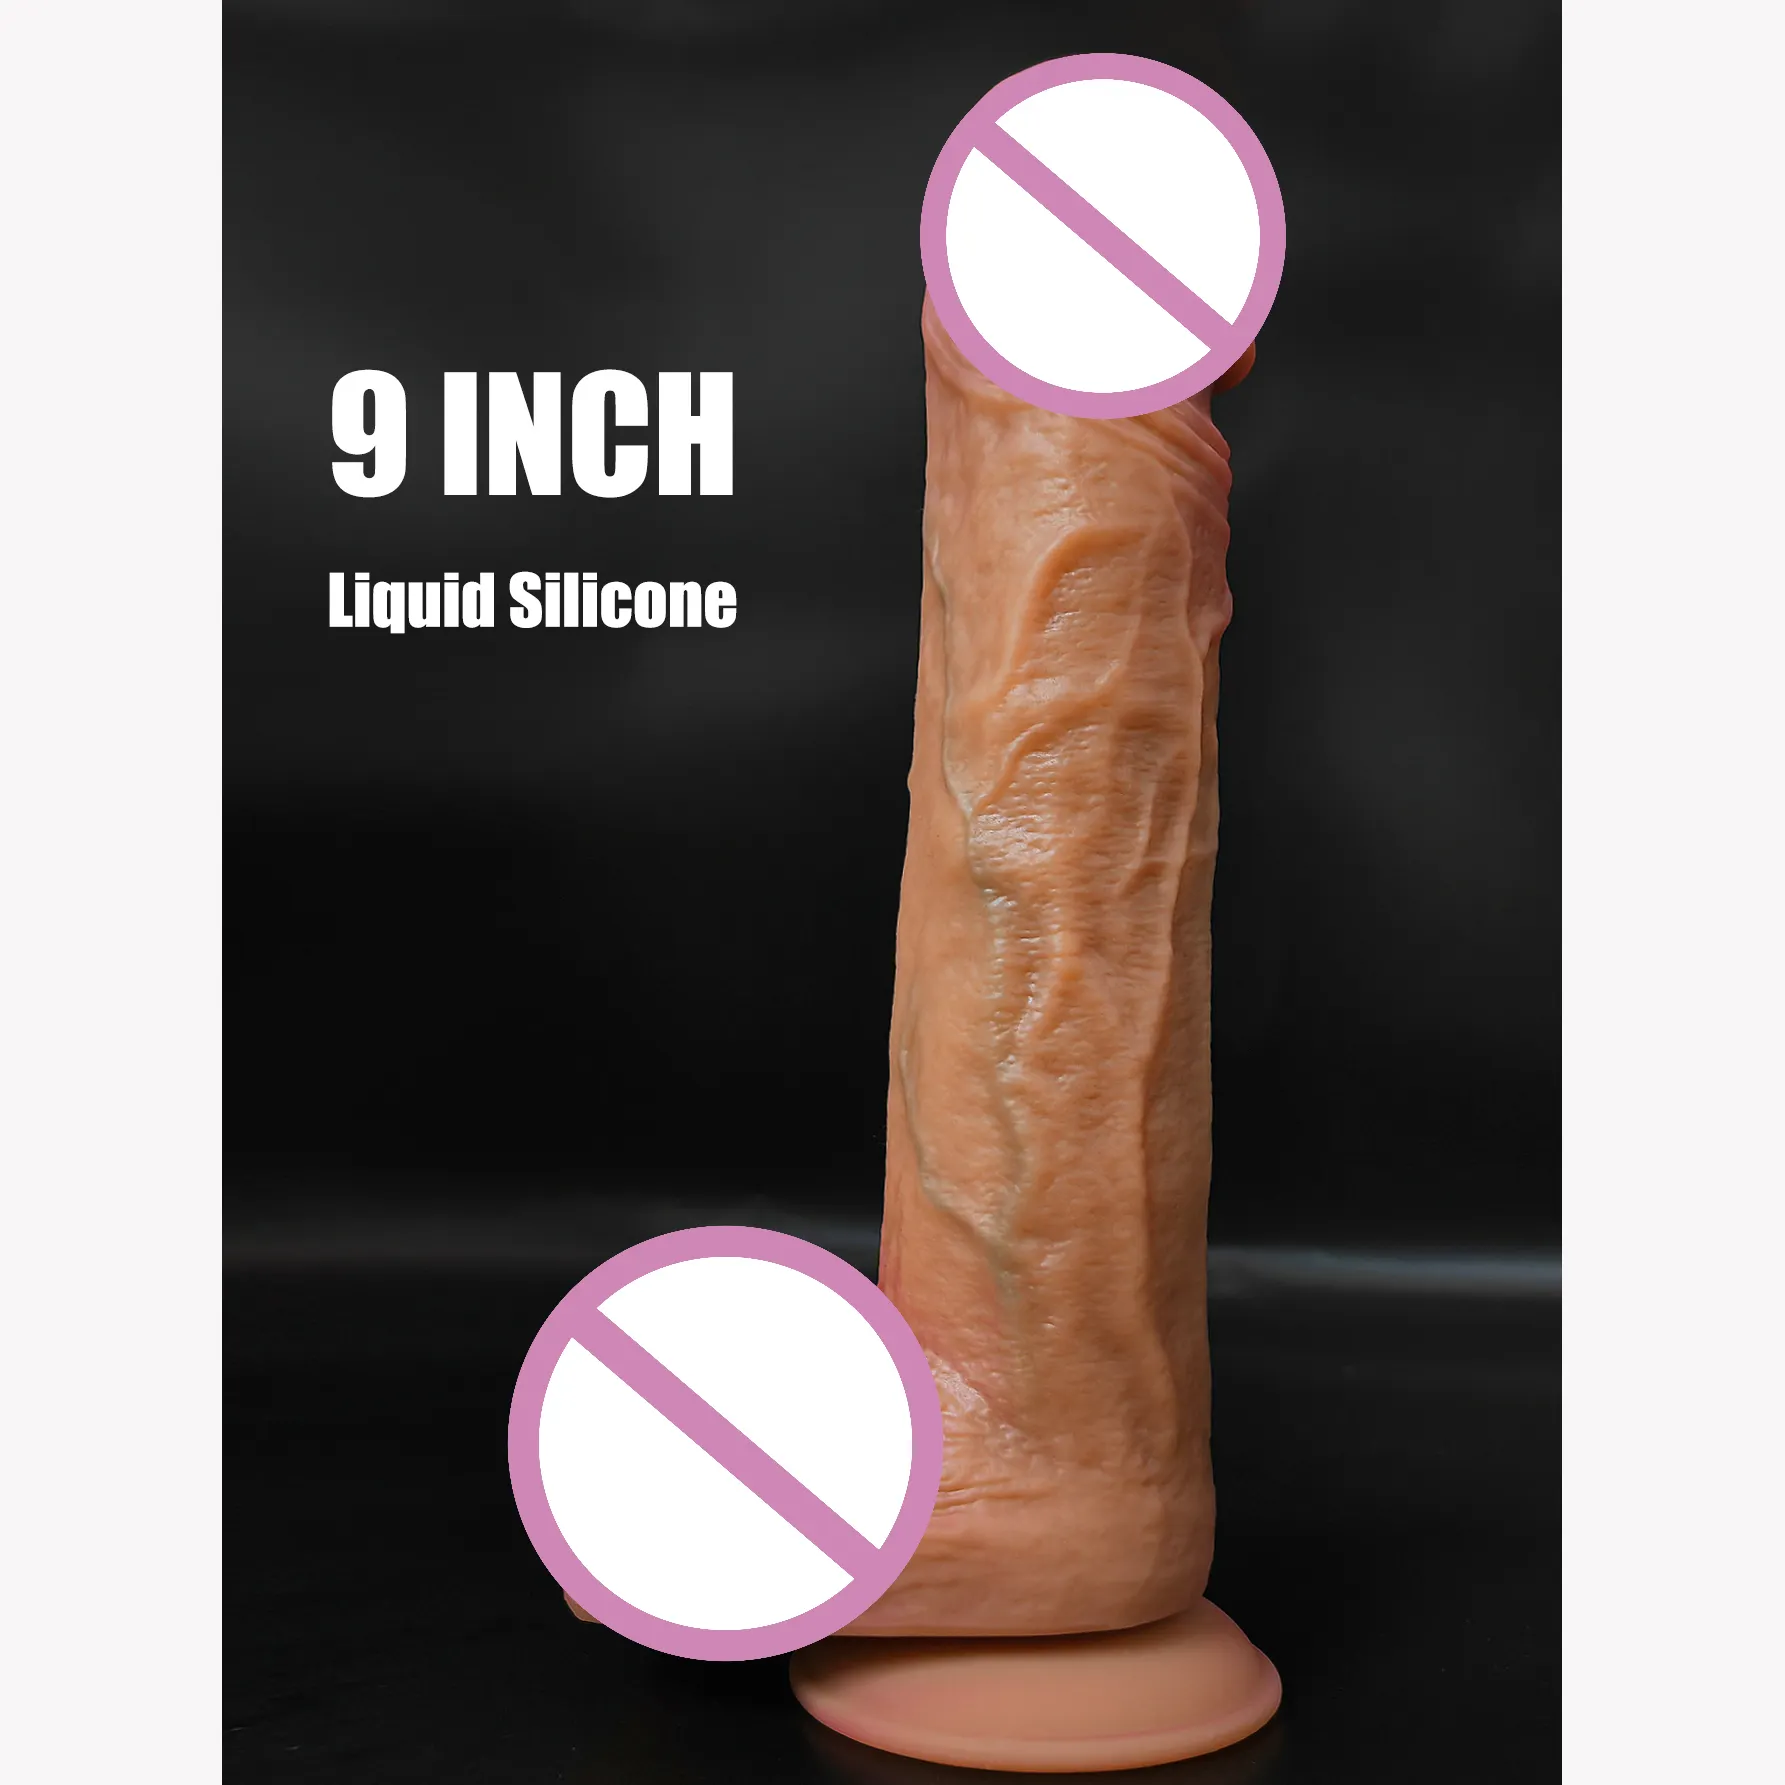 Dick sex toy pene gigante enorme dildo xxl silicone dildo grandi dildo realistici di spinta dildo per le donne